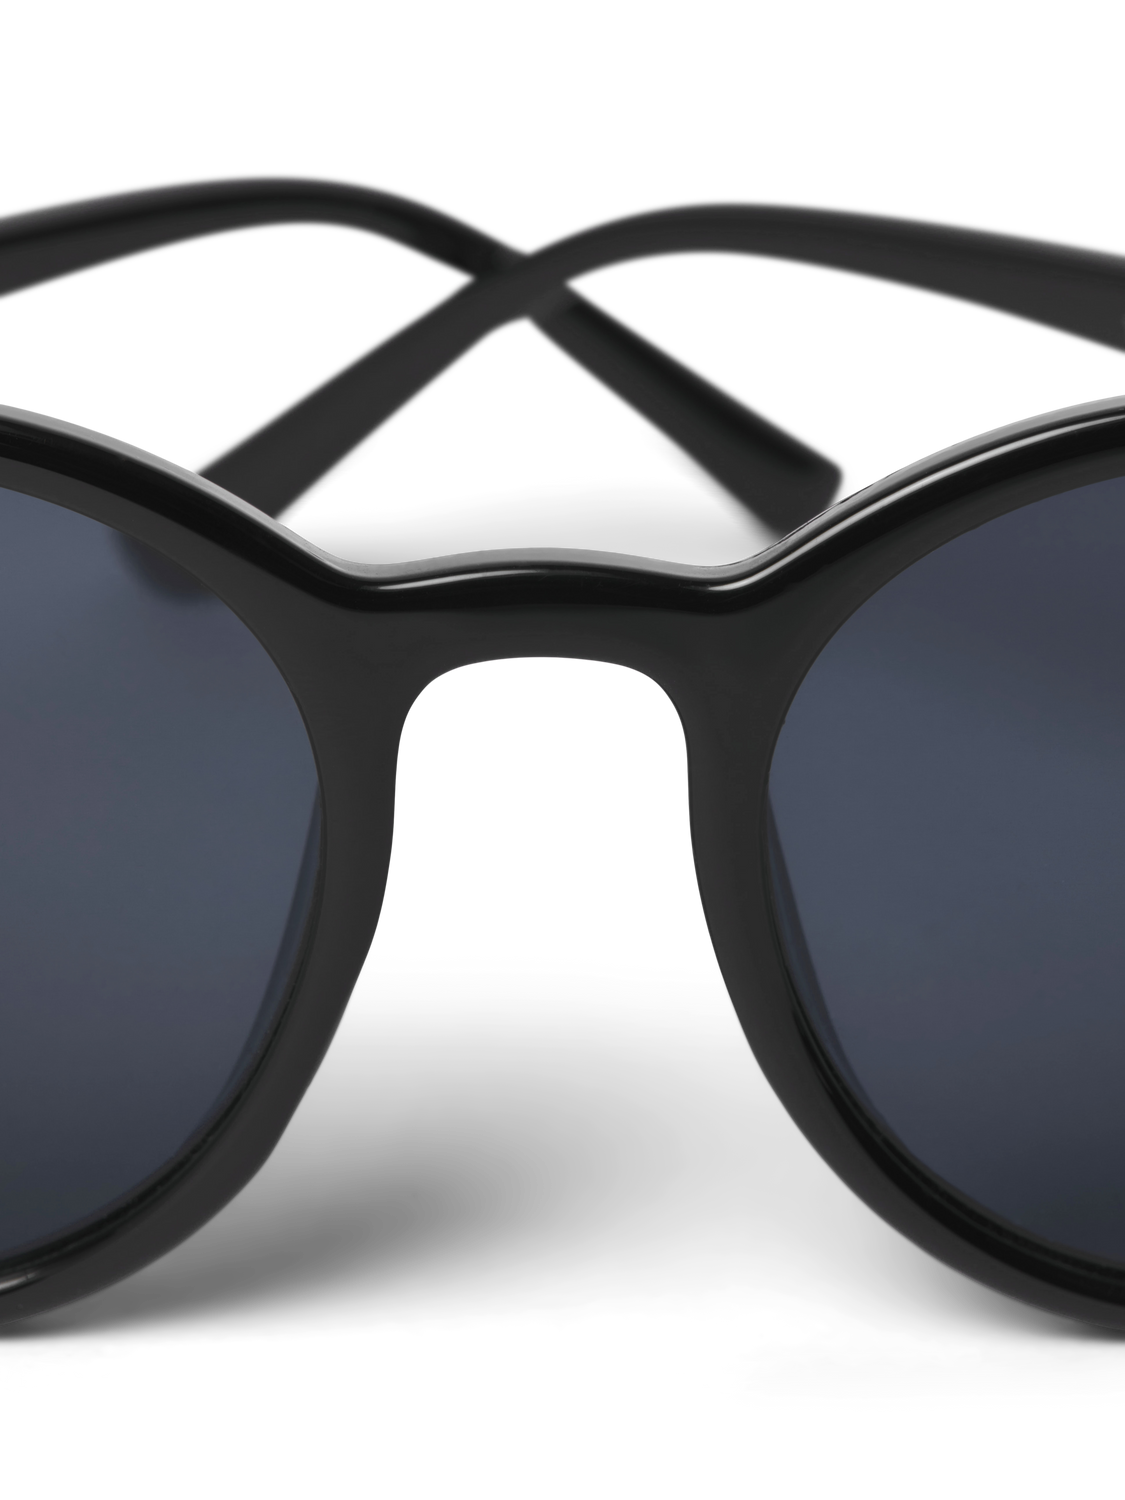 Jack & Jones Óculos de sol retangulares Plástico -Pirate Black - 12262731